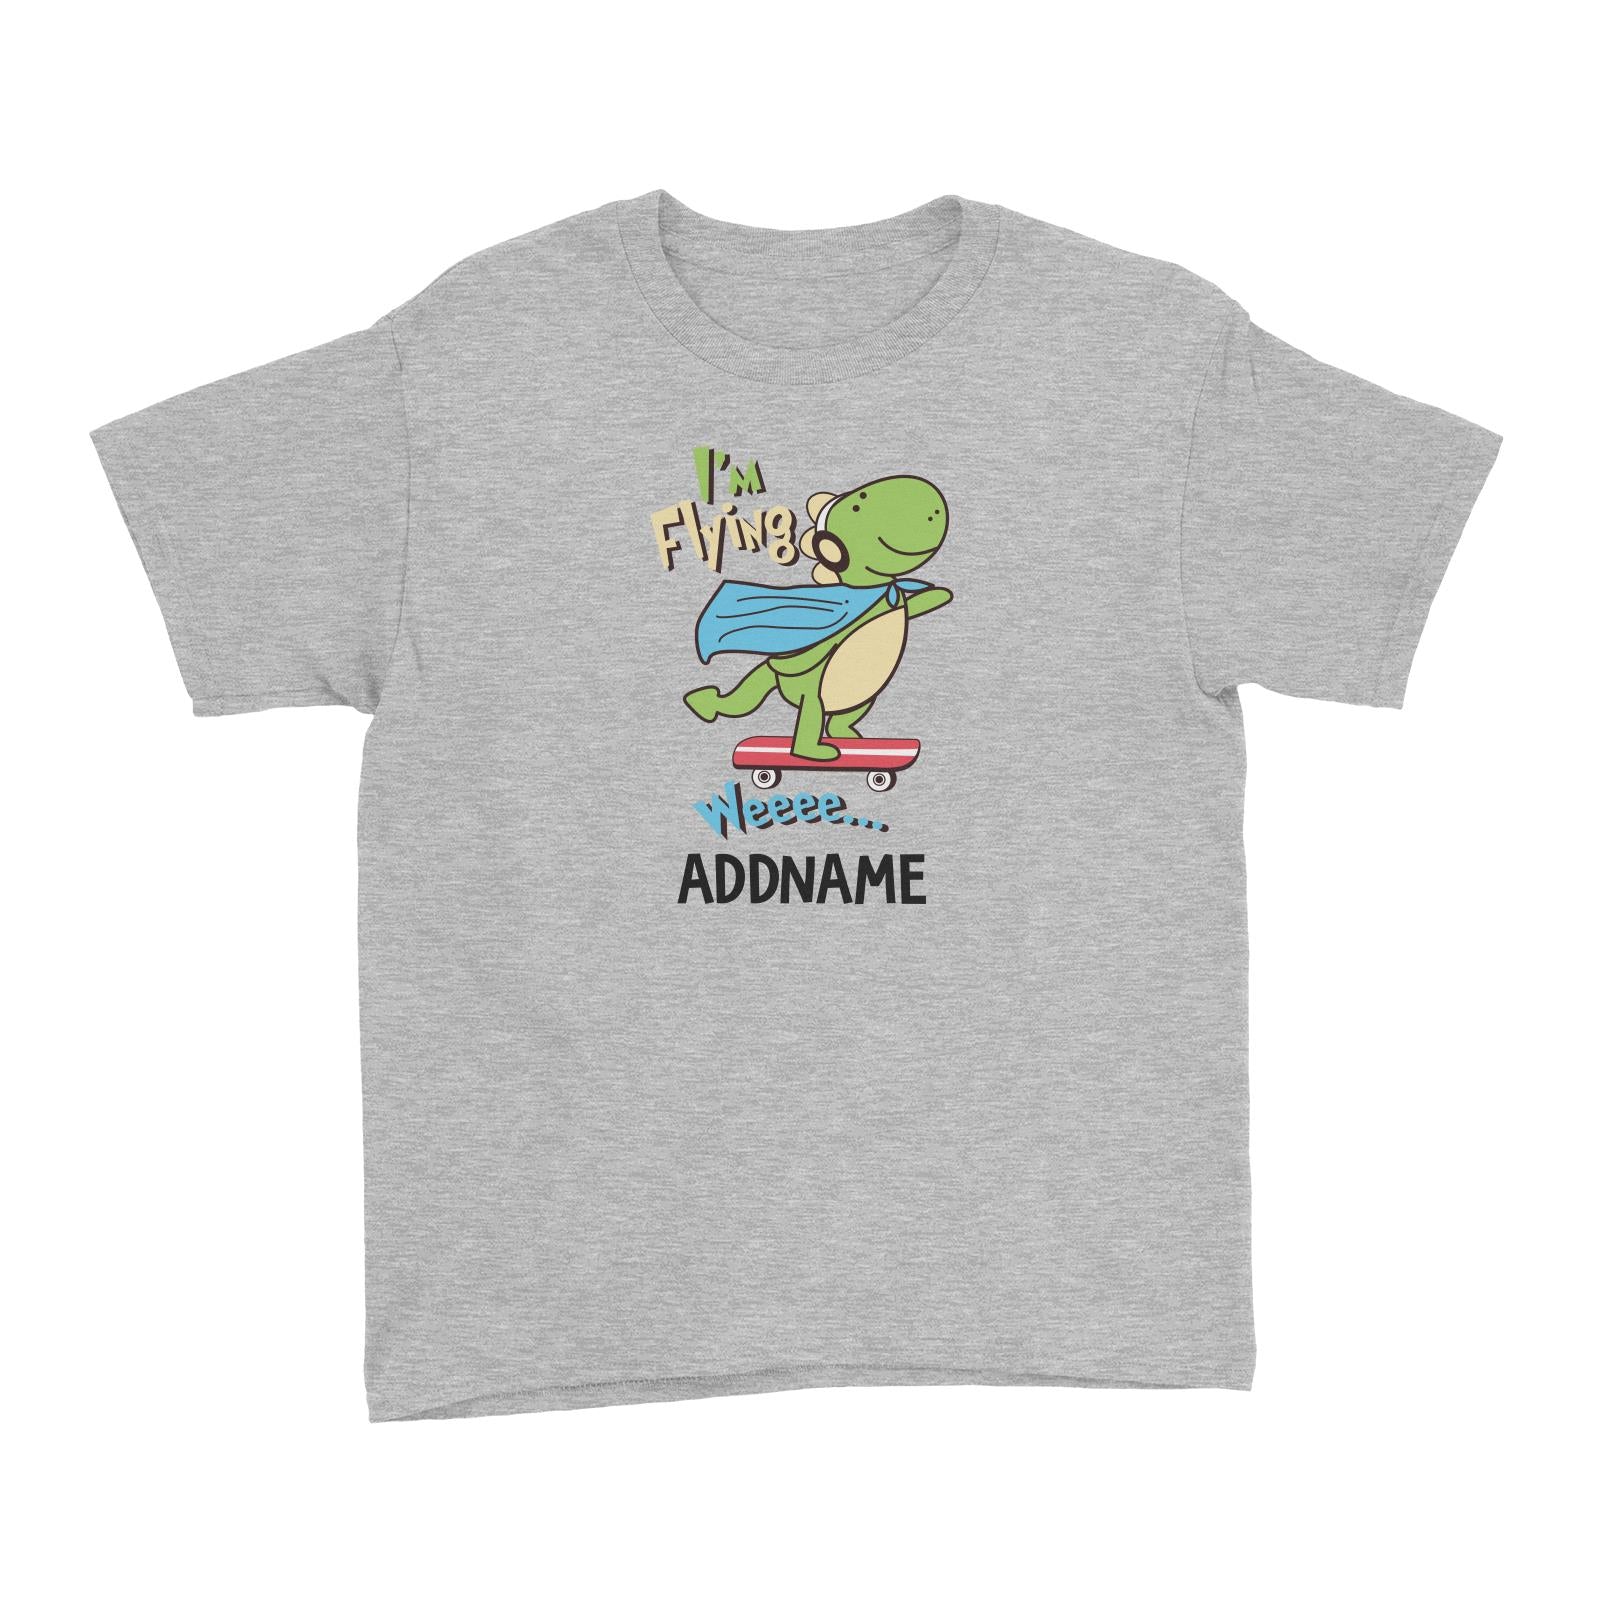 Cool Vibrant Series I'm Flying Dinosaur on Skateboard Addname Kid's T-Shirt